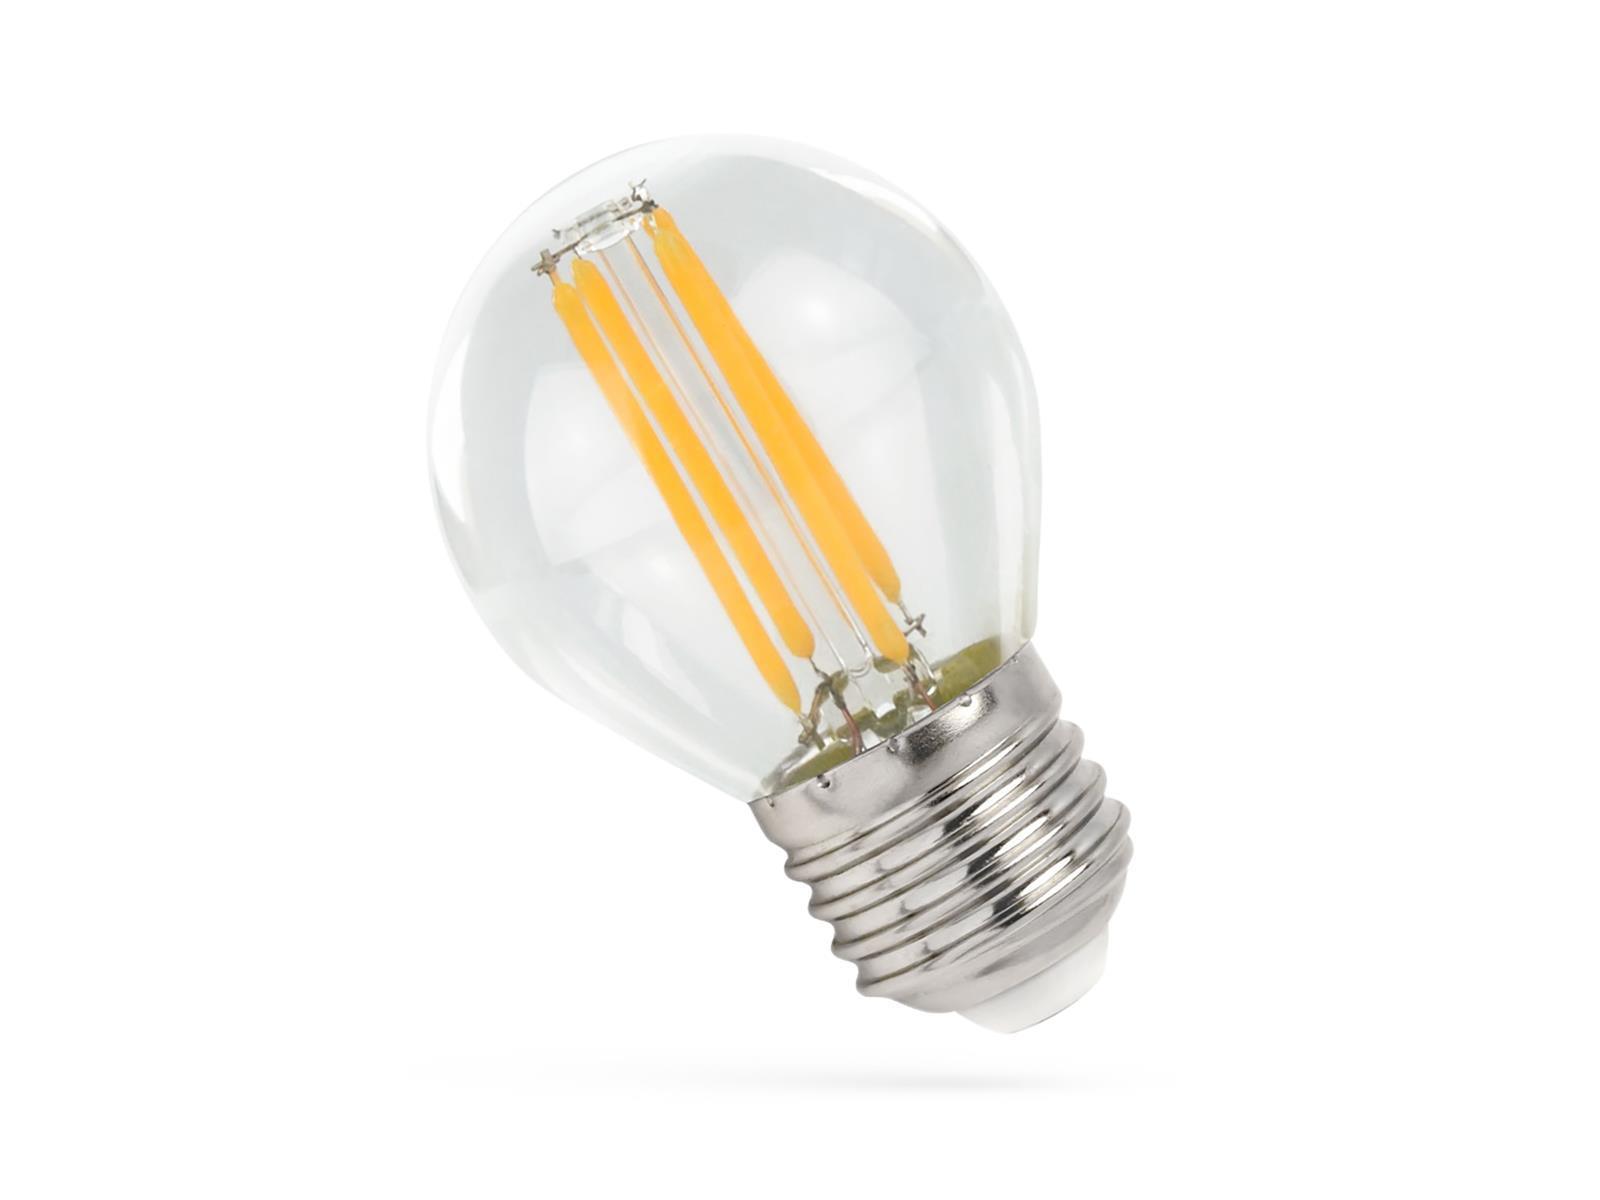 LED Filament Tropfenlampe, E27, 230V, 4W, 1800K - ultra warmweiß, klar